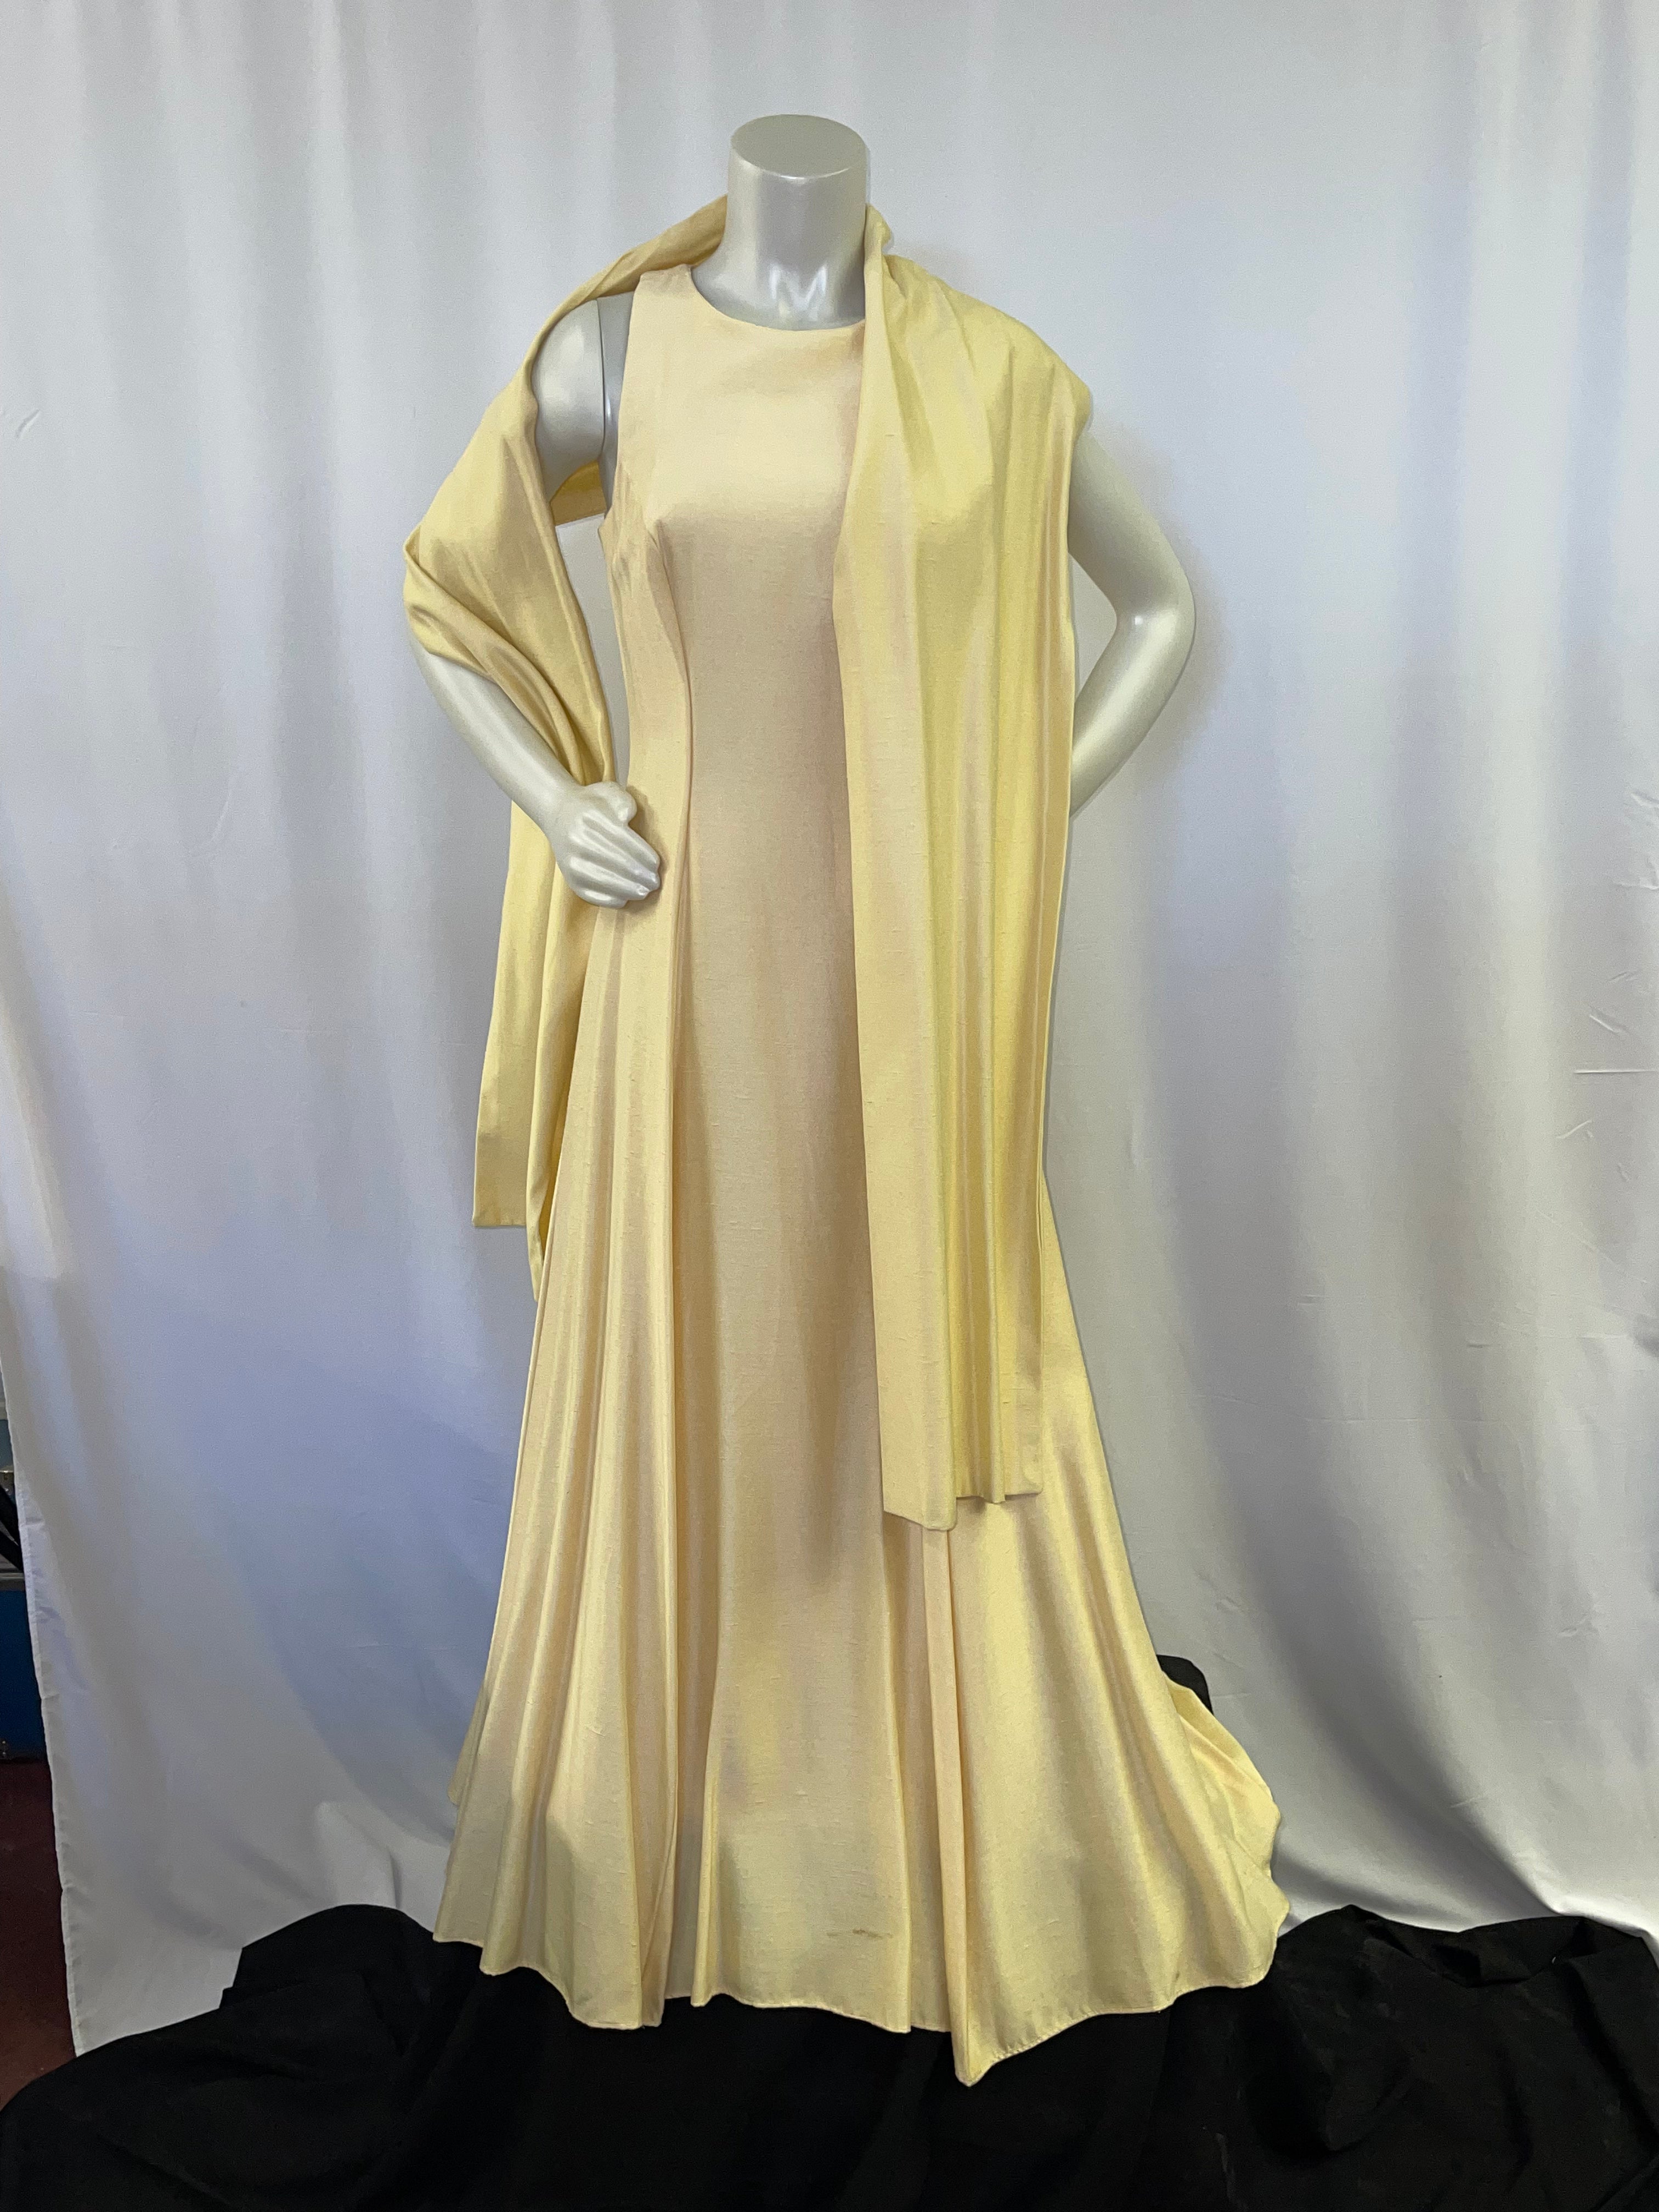 butter yellow dress